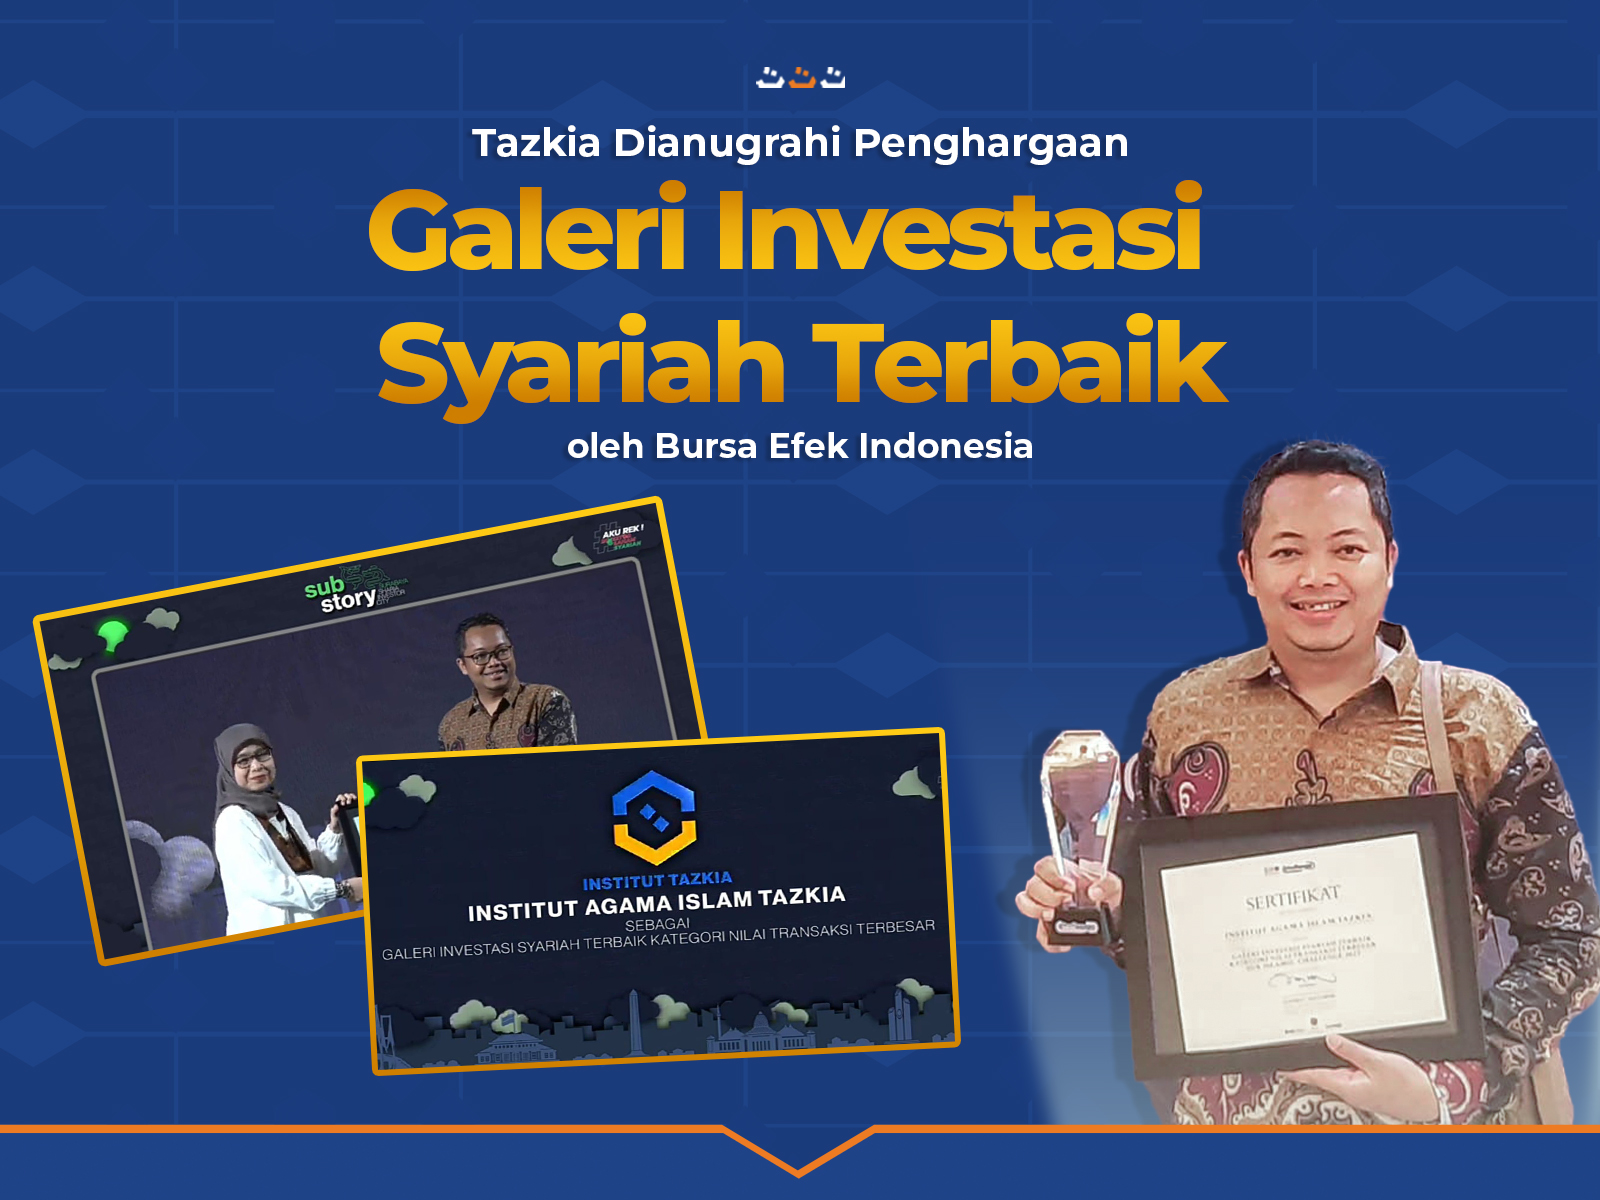 Tazkia Dianugrahi Penghargaan Galeri Investasi Syariah oleh Bursa Efek Indonesia